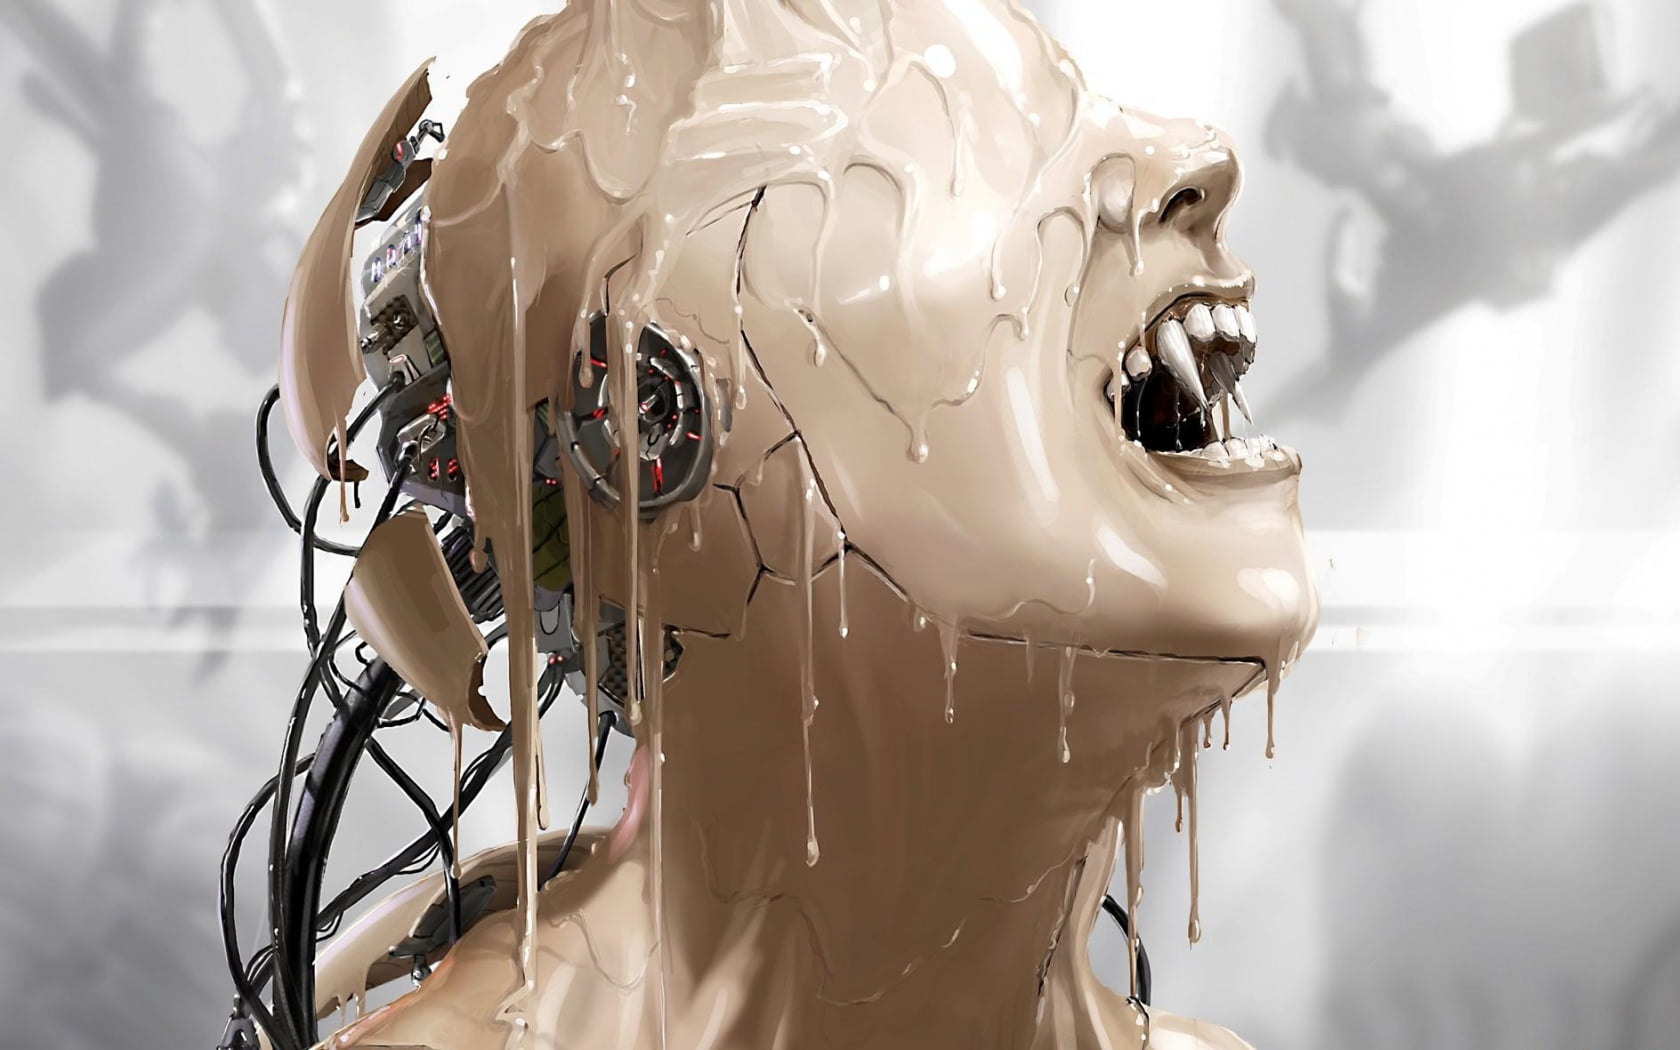 Robot vampire illustration, vampires, androids, robot, futuristic HD  wallpaper | Wallpaper Flare